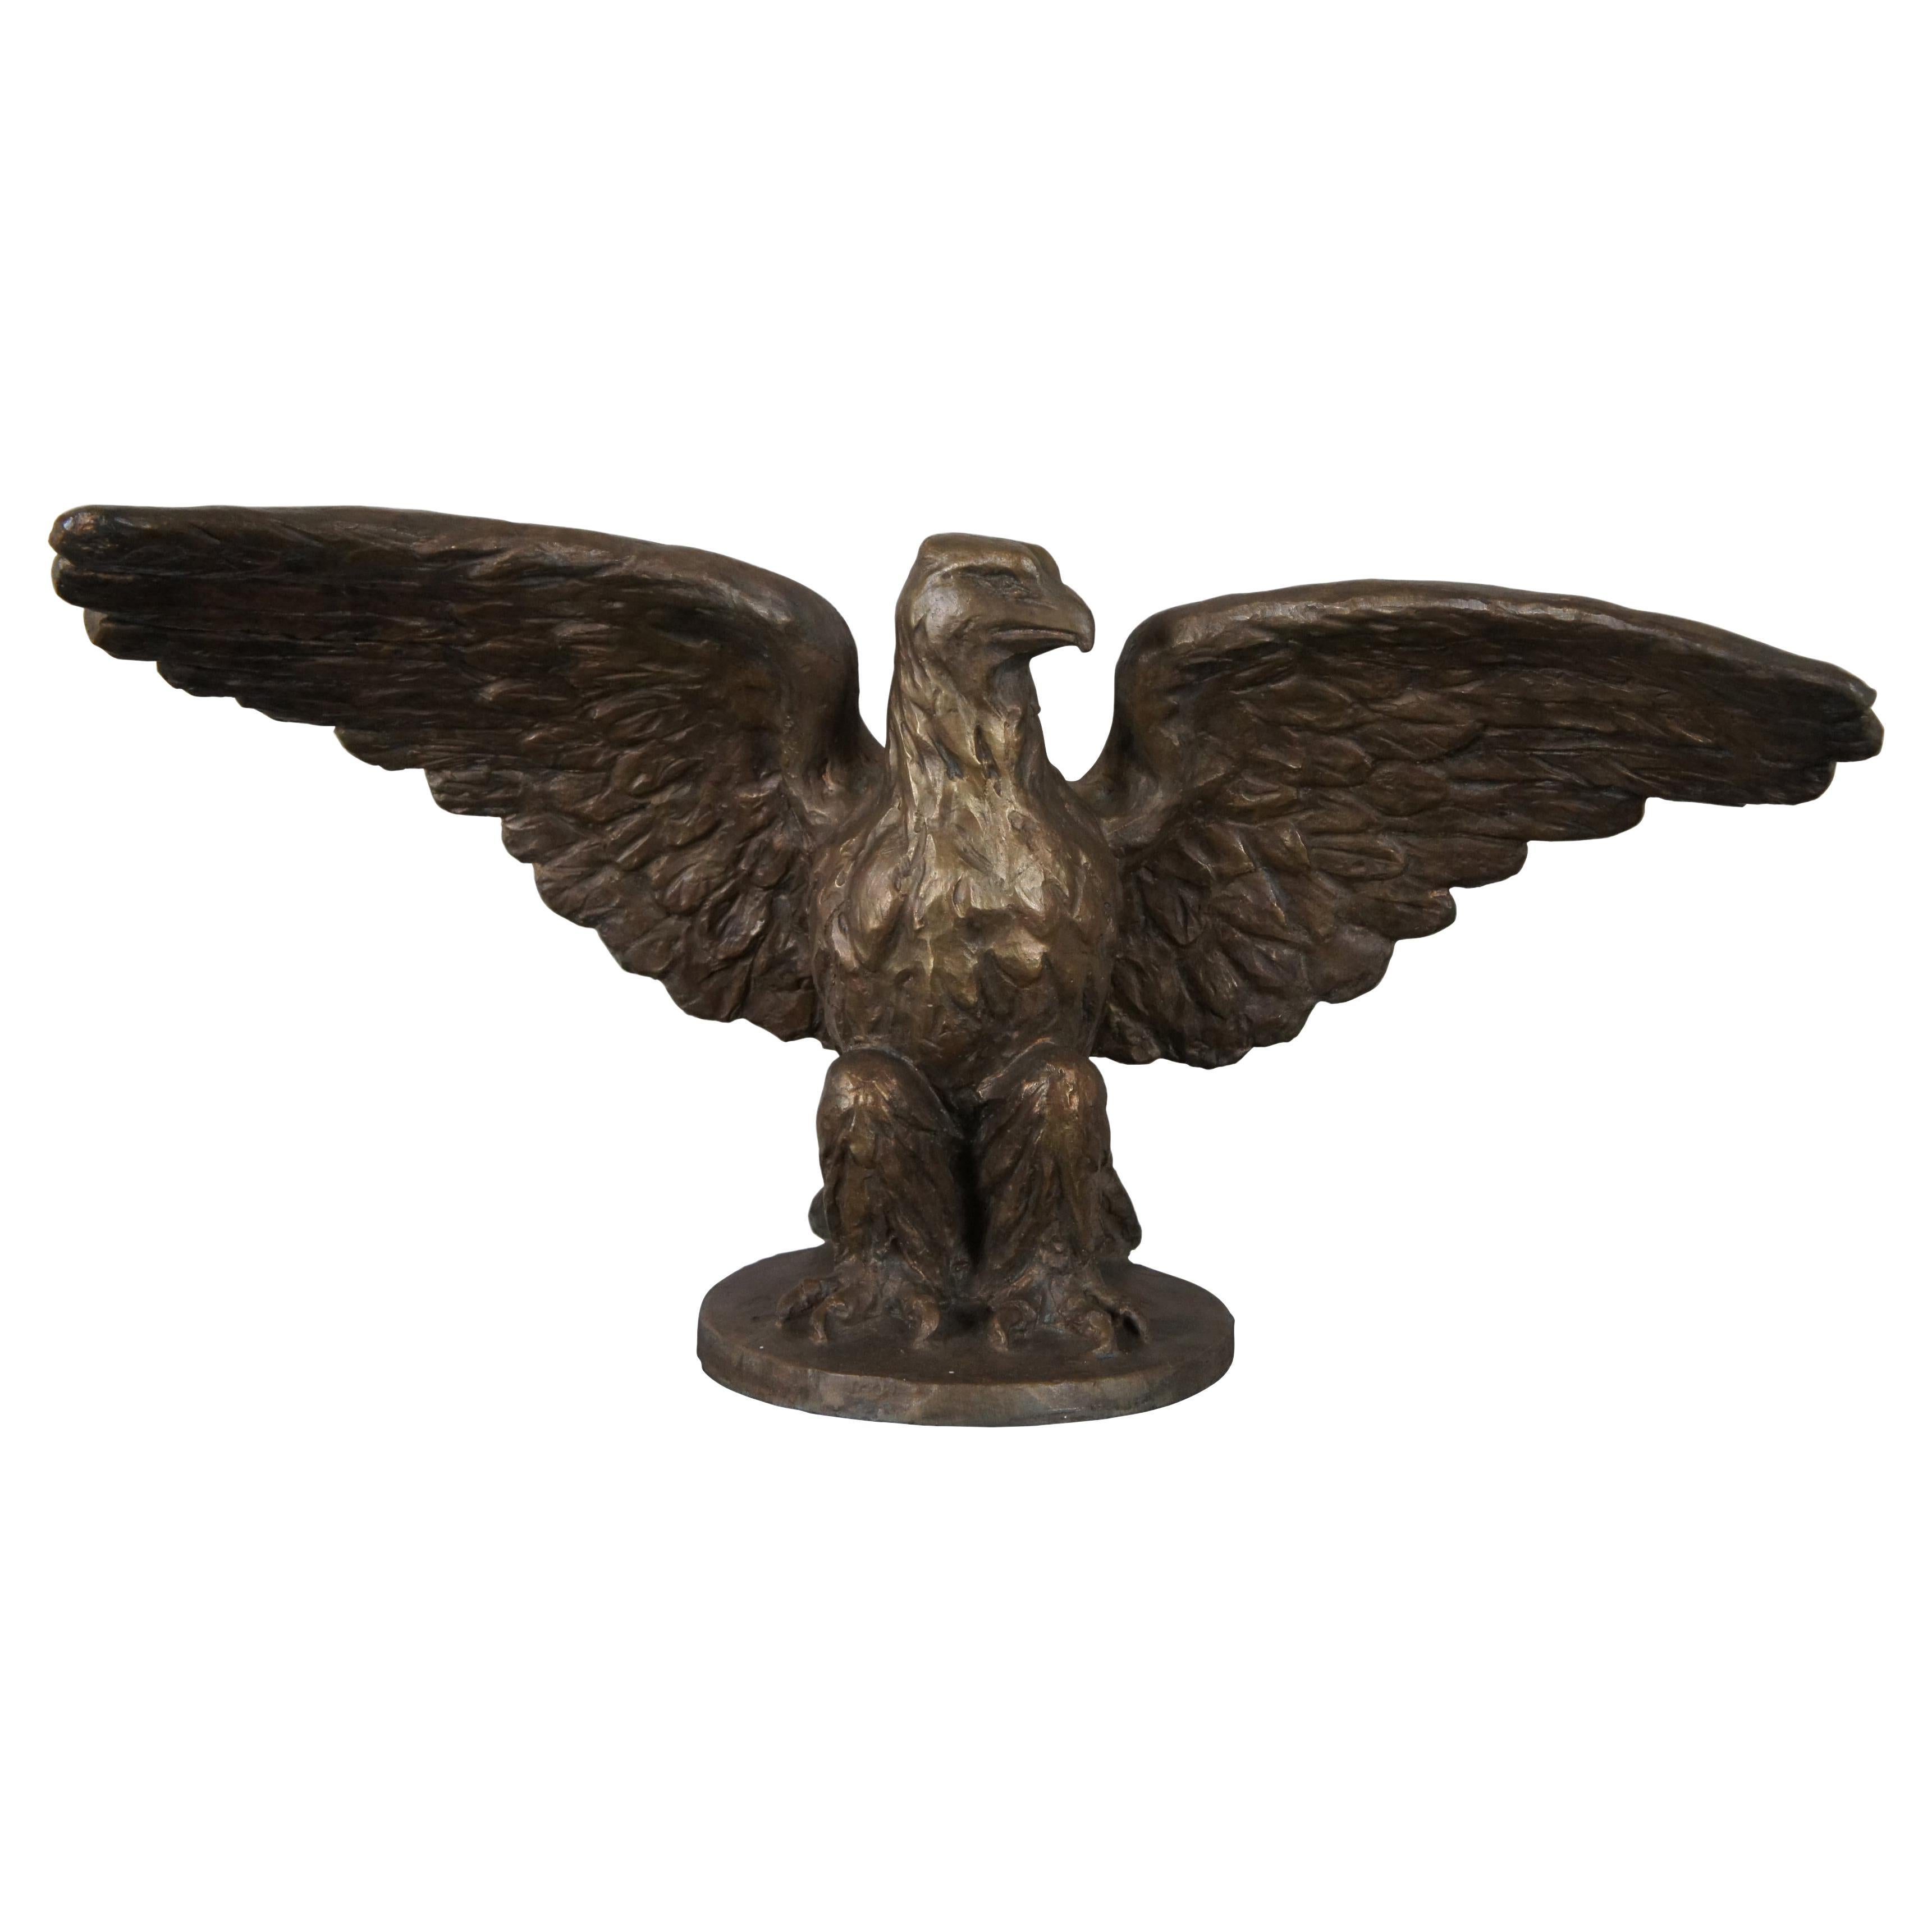 Monumental Antique Roman Bronze Works Gilt American Bald Eagle Sculpture Statue